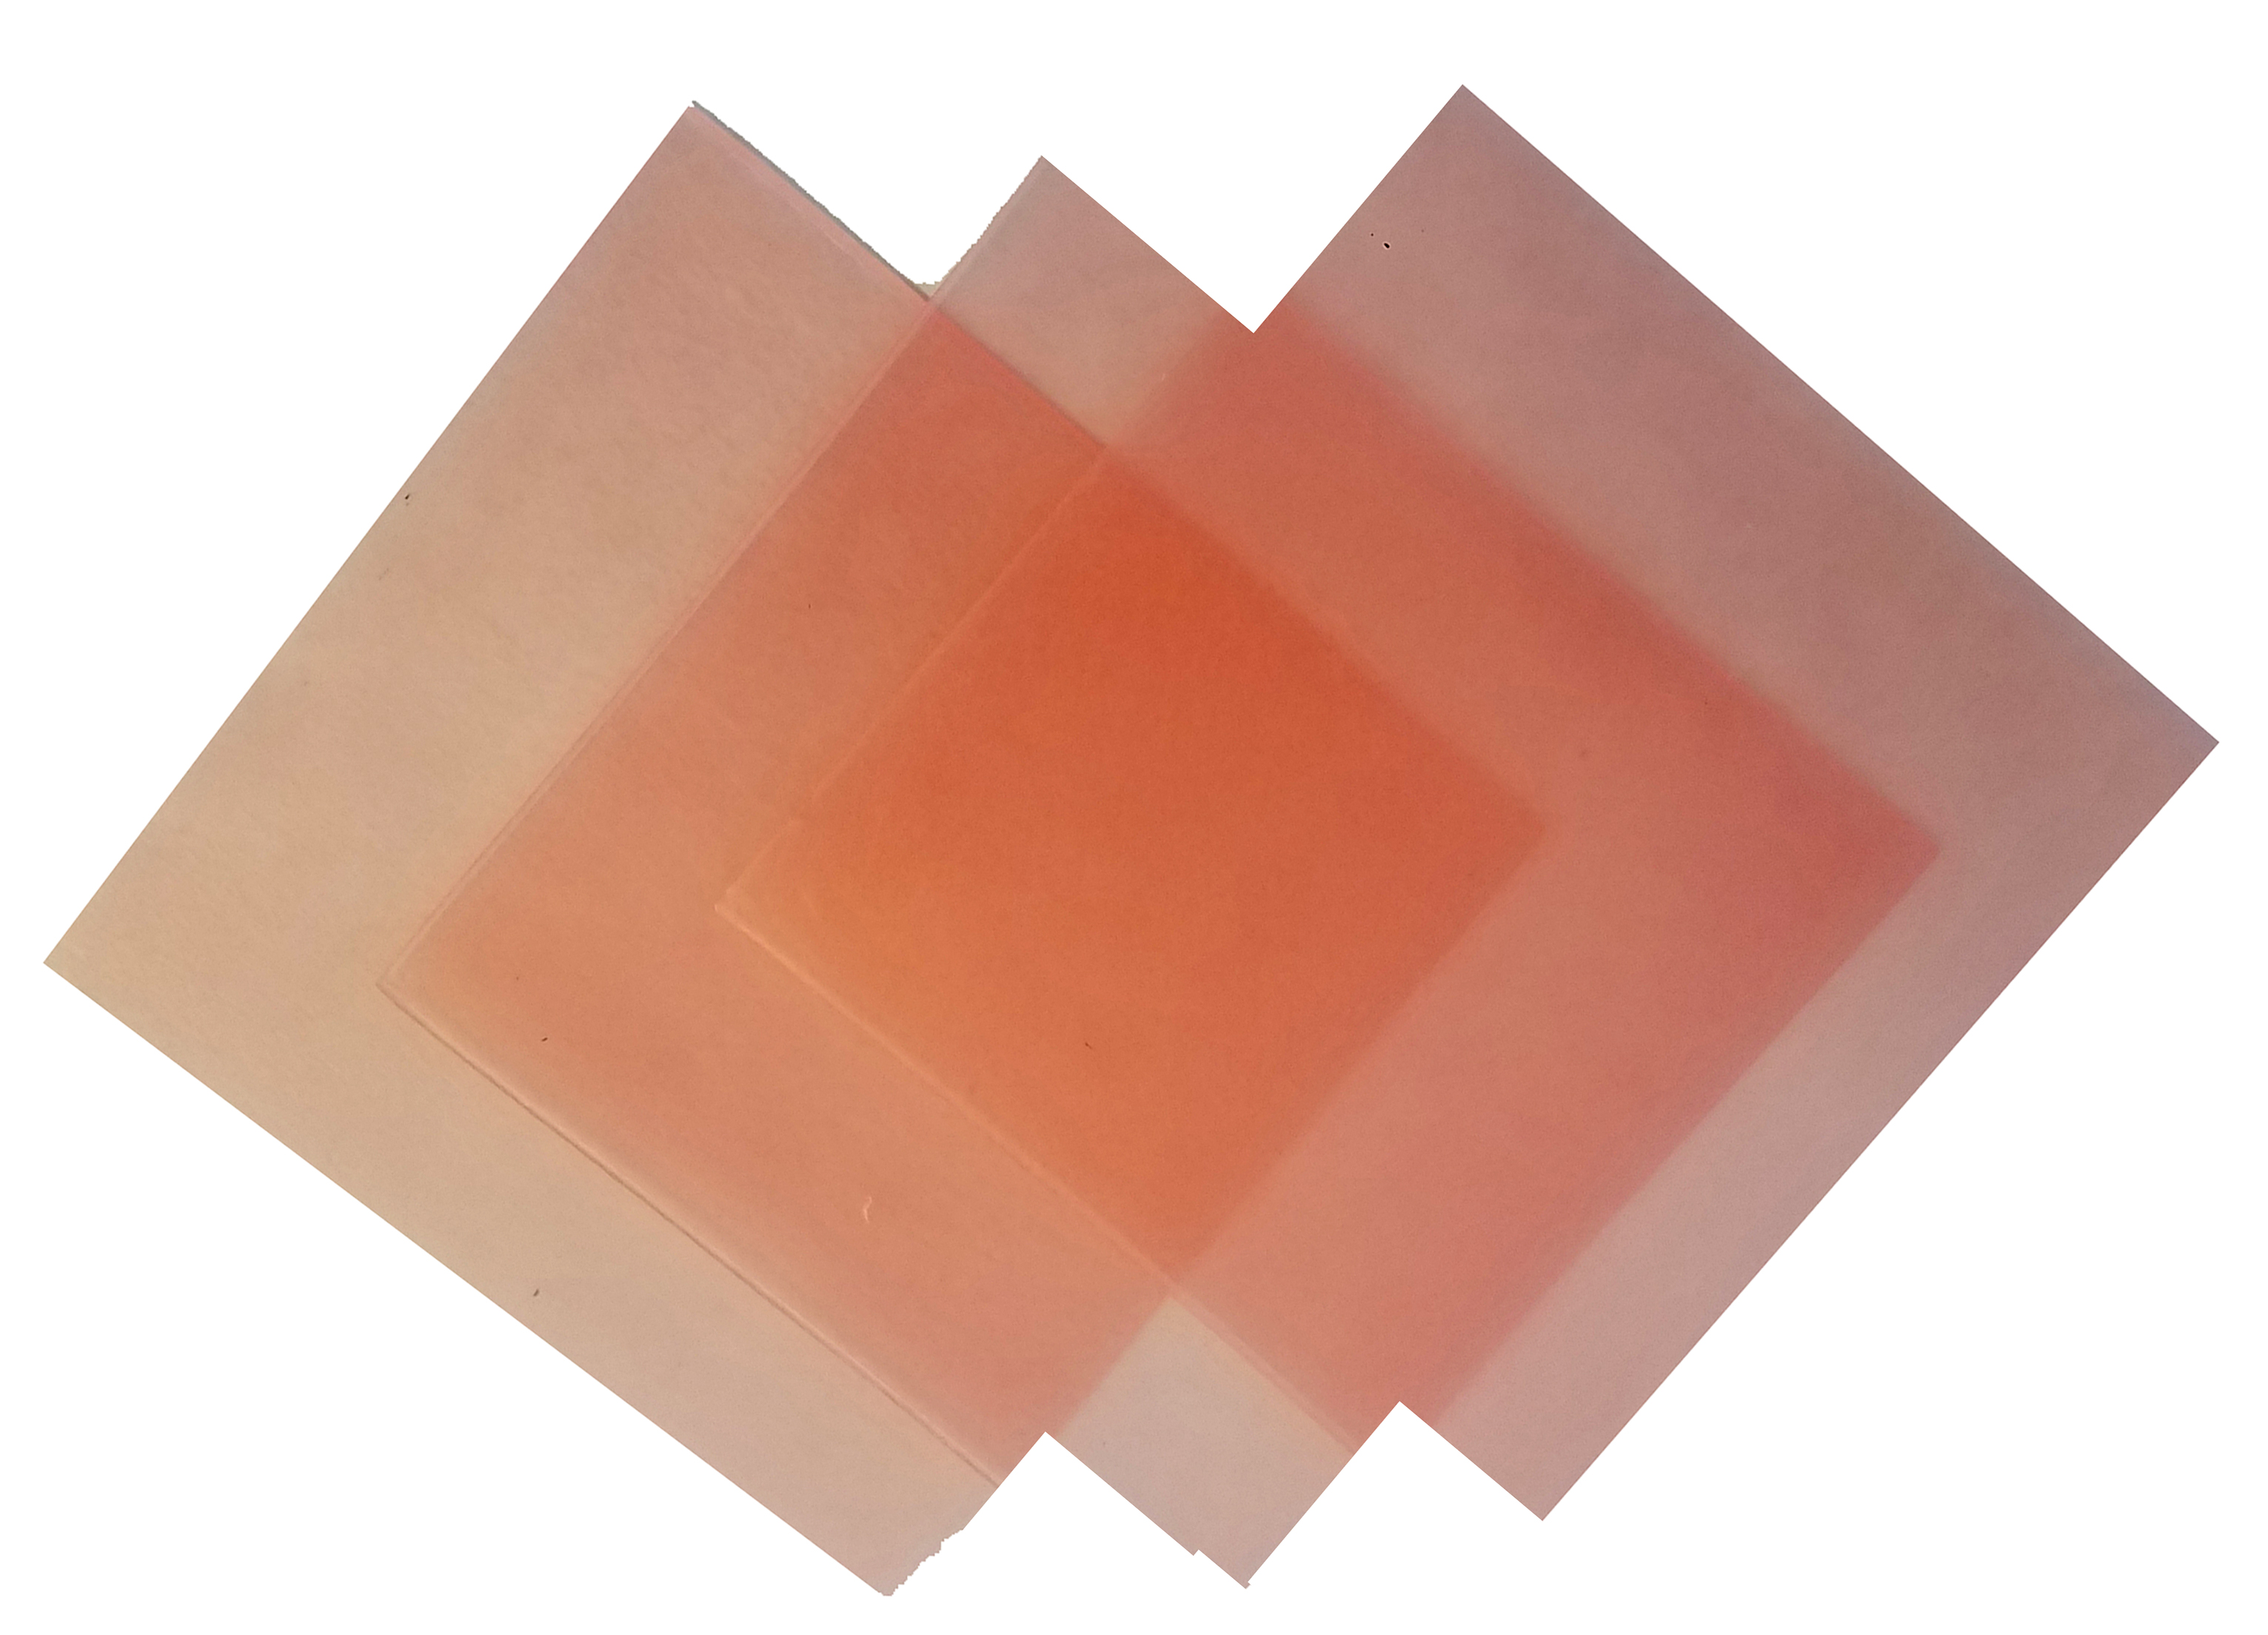 4"x4" sheet wax 26 gauge pink